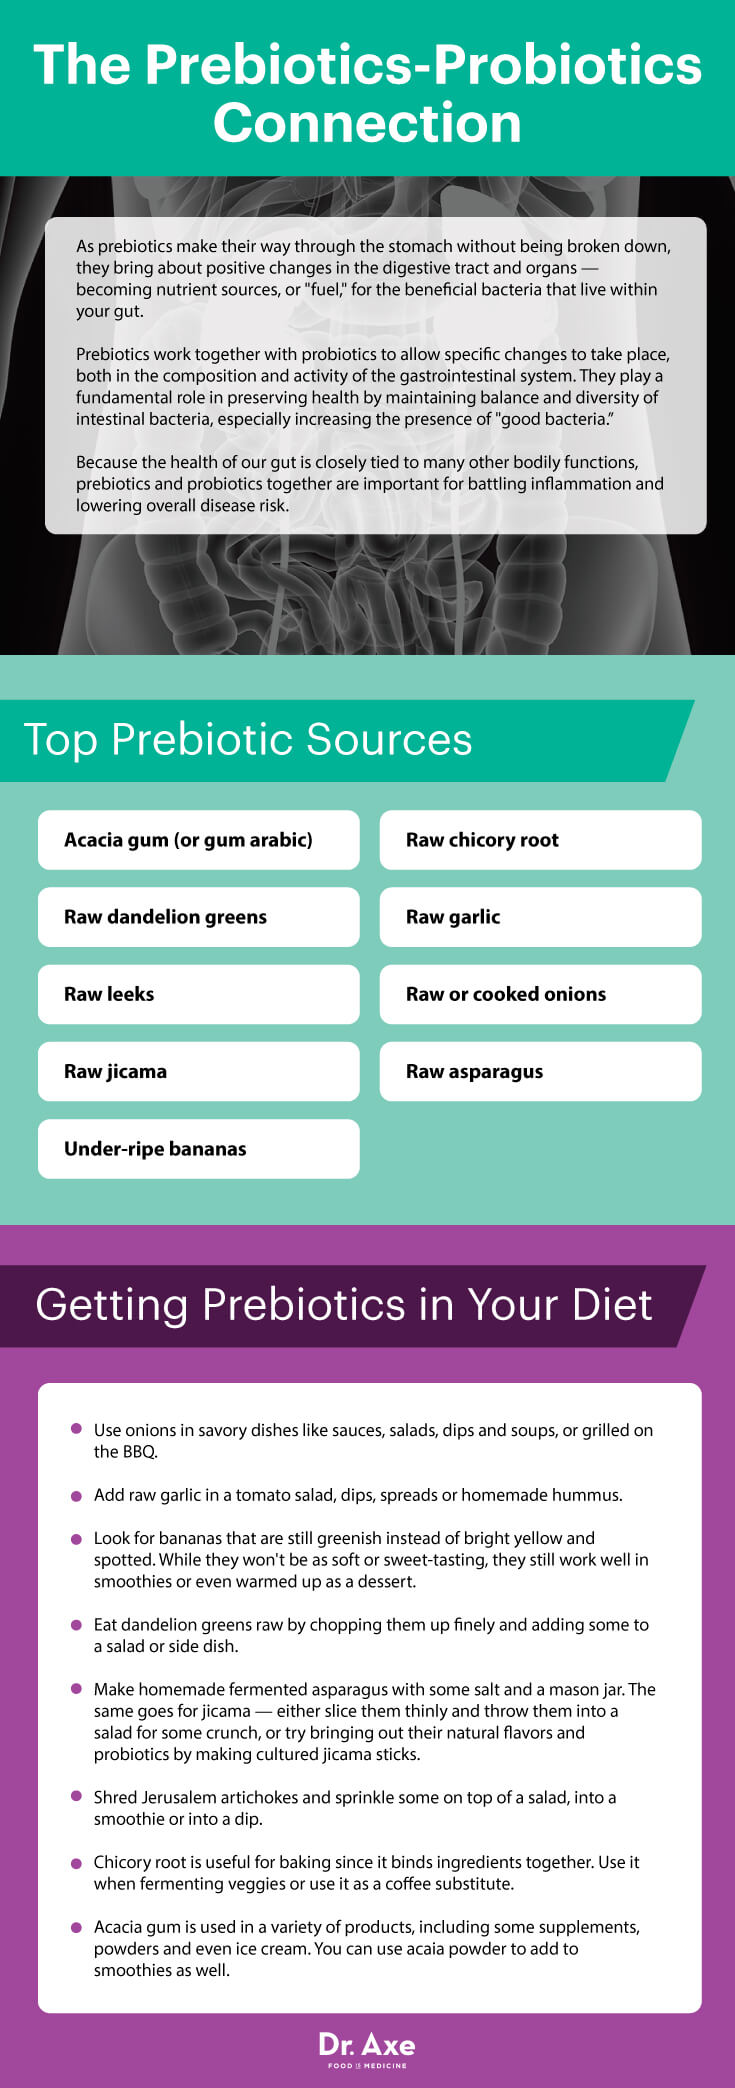 Prebiotics-probiotics connection - Dr. Axe